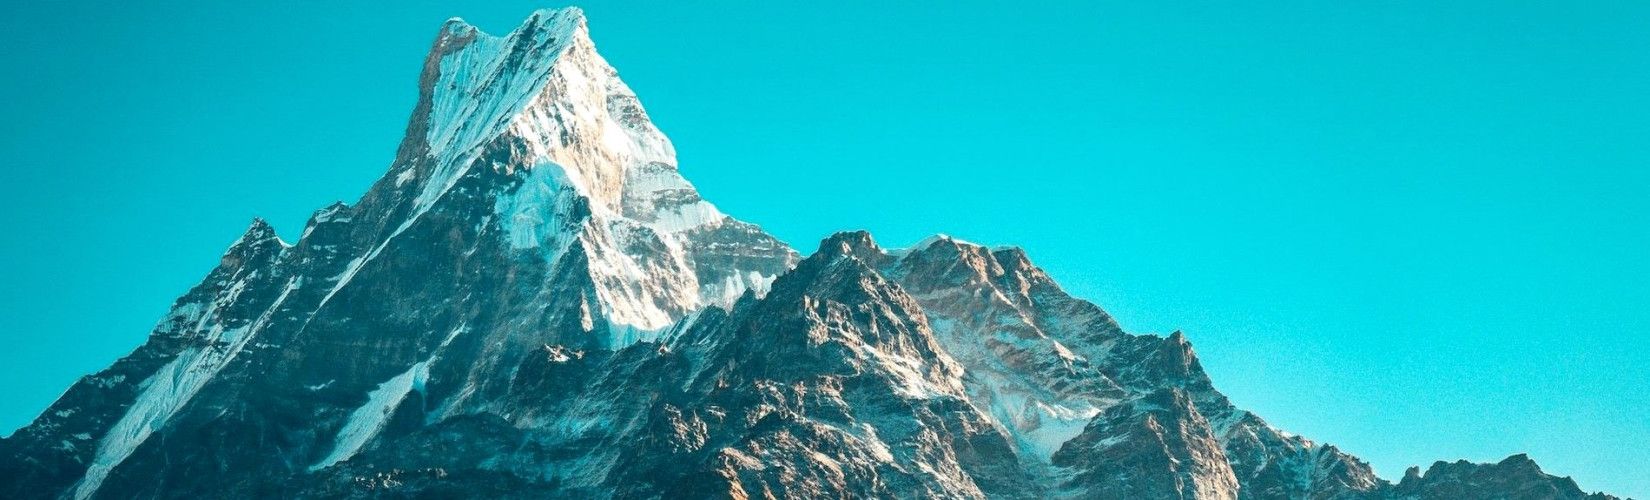 Easiest 6000 meter peaks in Nepal to climb